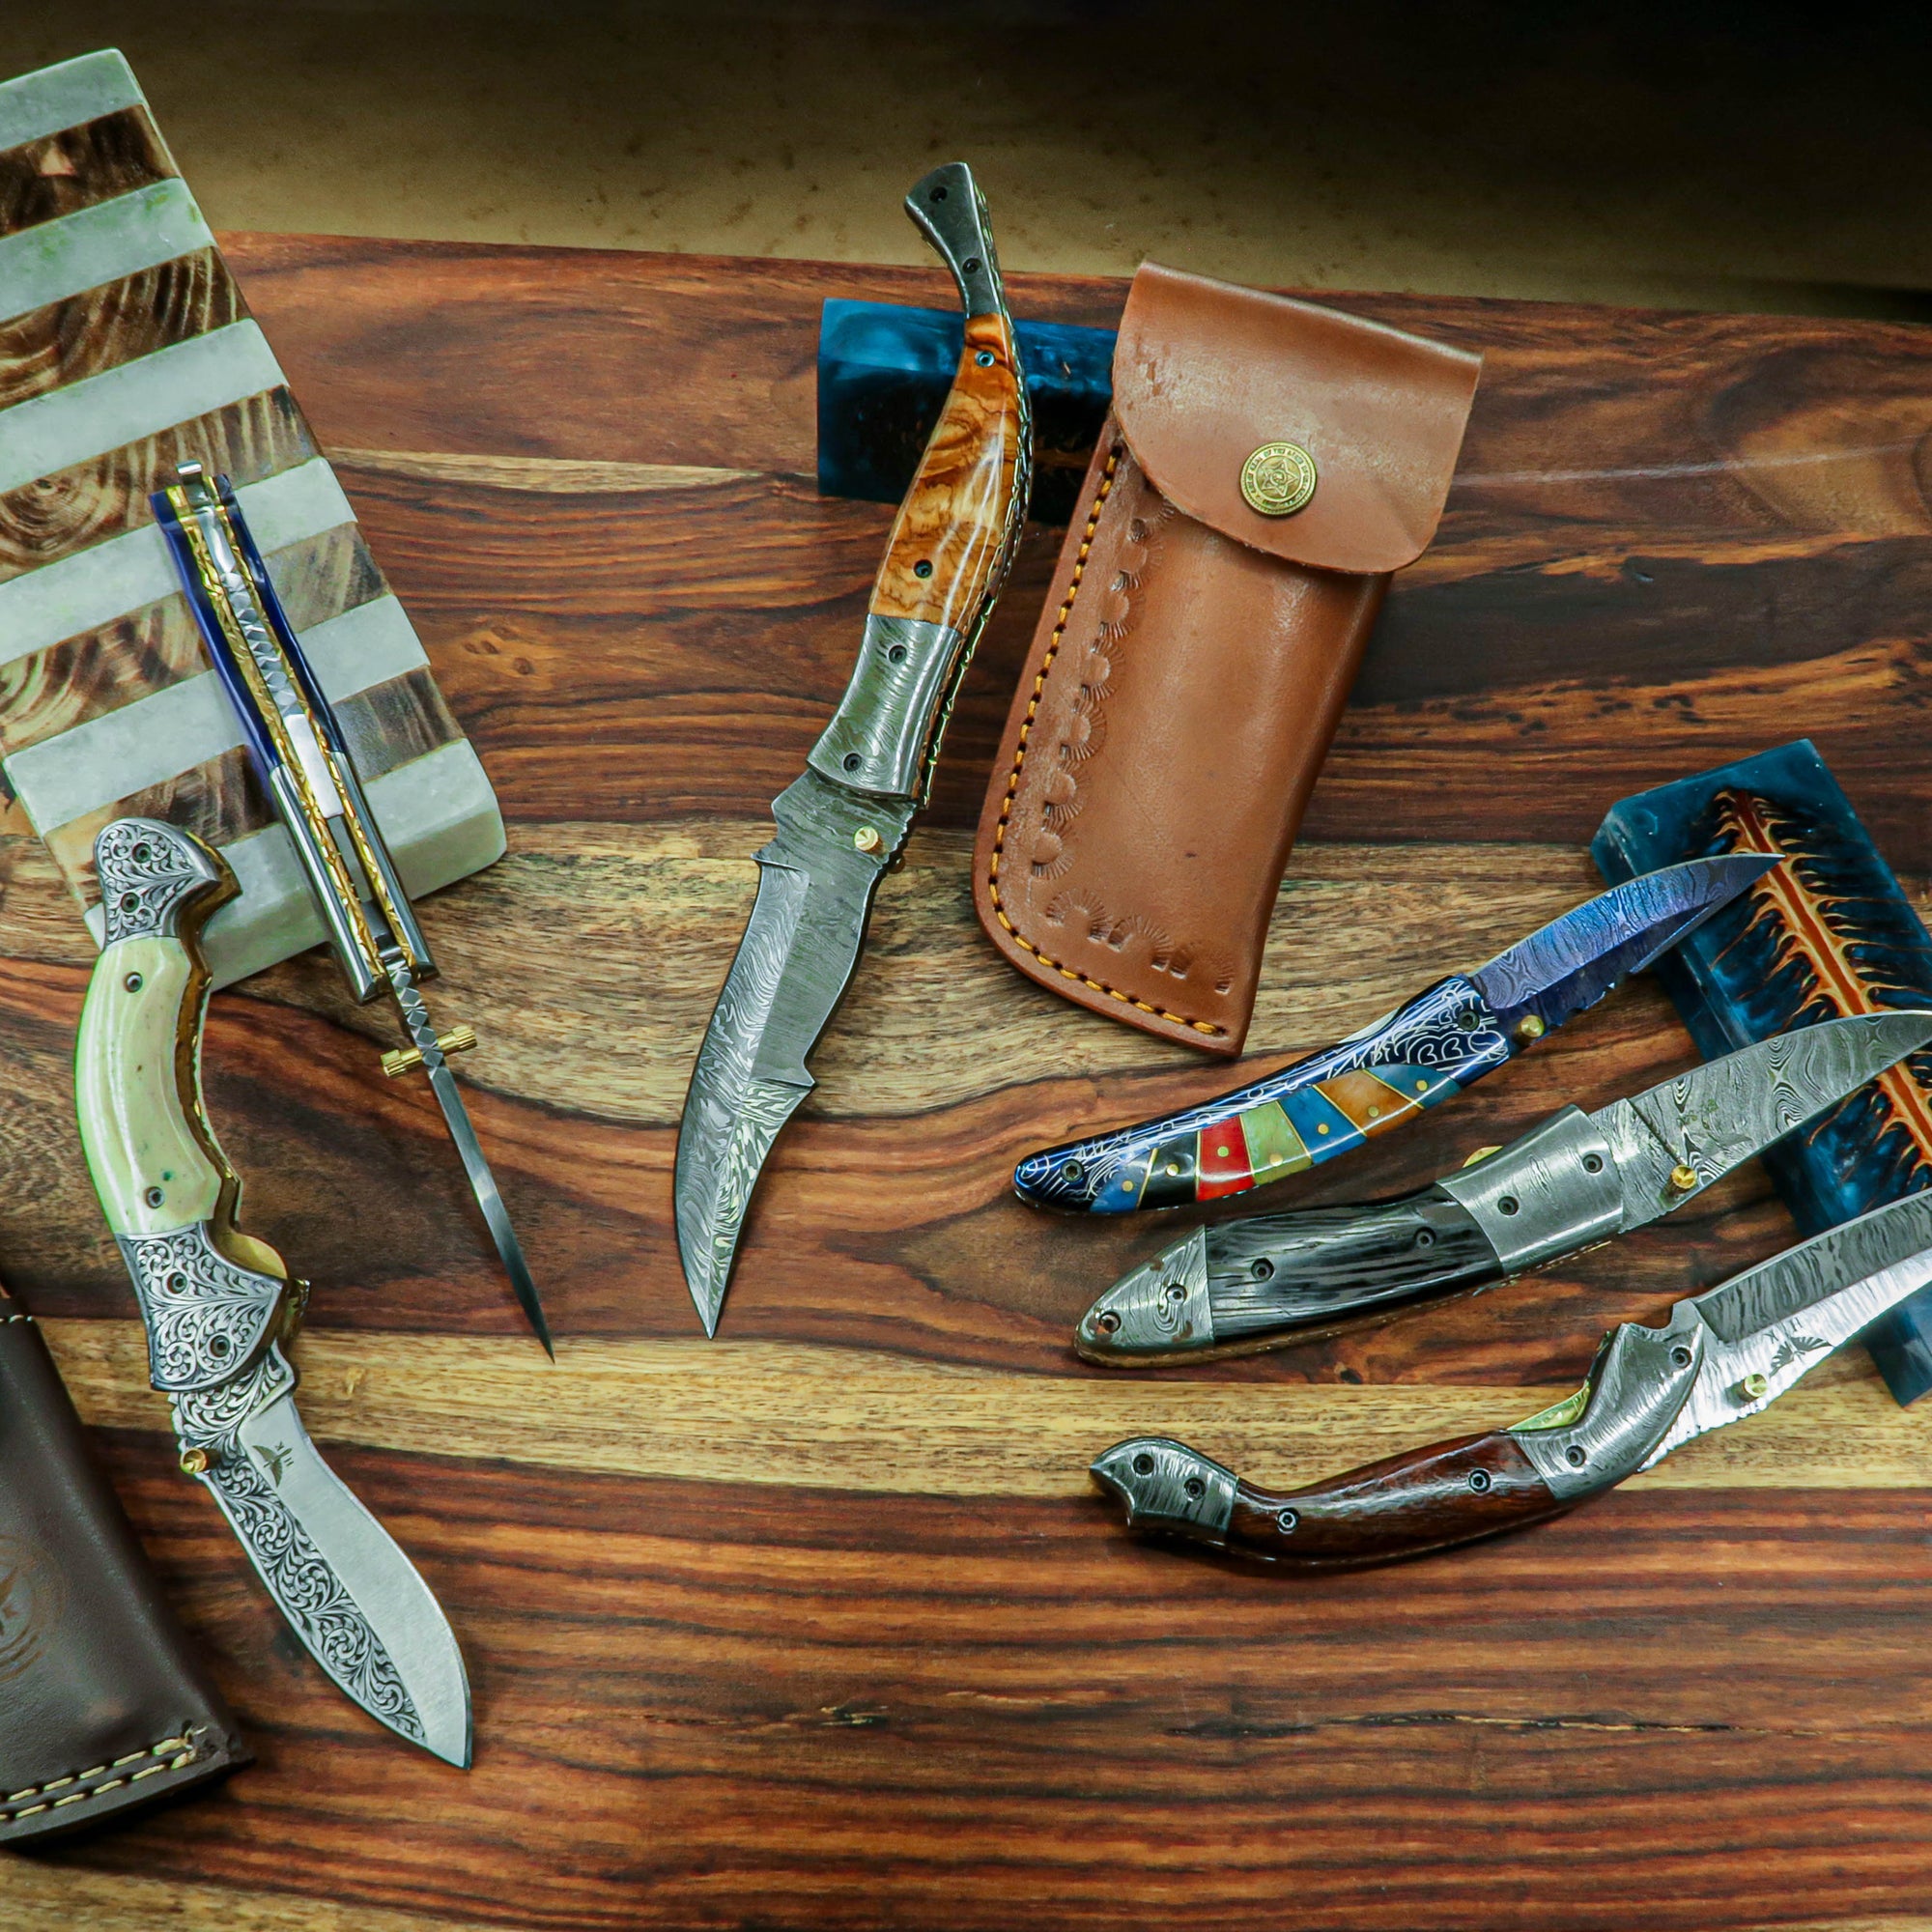 HT-101 Custom handmade Damascus Skinner Knife/ SERRATED Edge / Rose wo —  HomeTown Knives